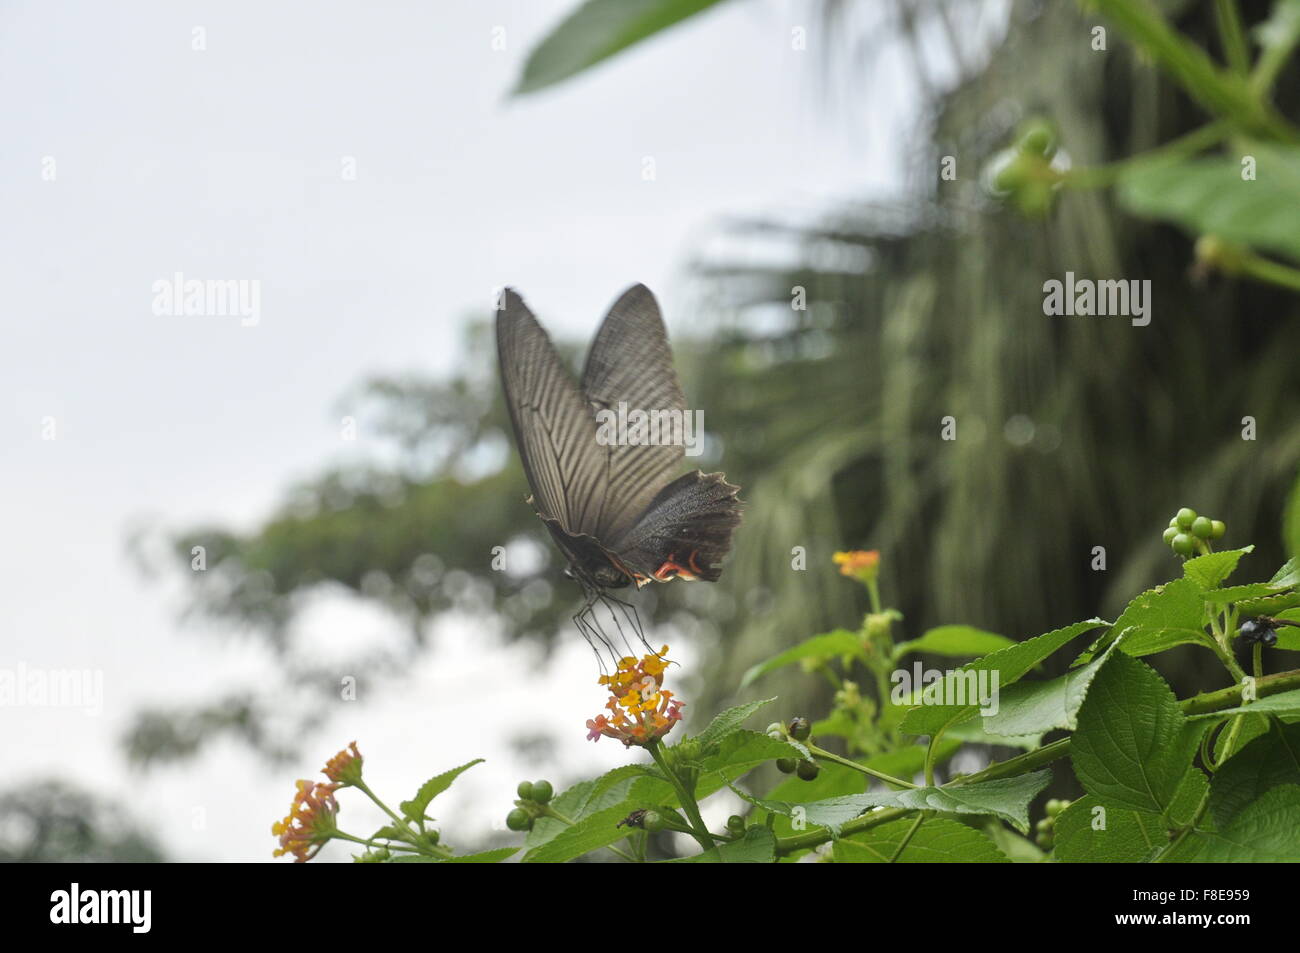 Scharlachroter Schwalbenschwanz Schmetterling, Flores, Indonesien, Asien Stockfoto